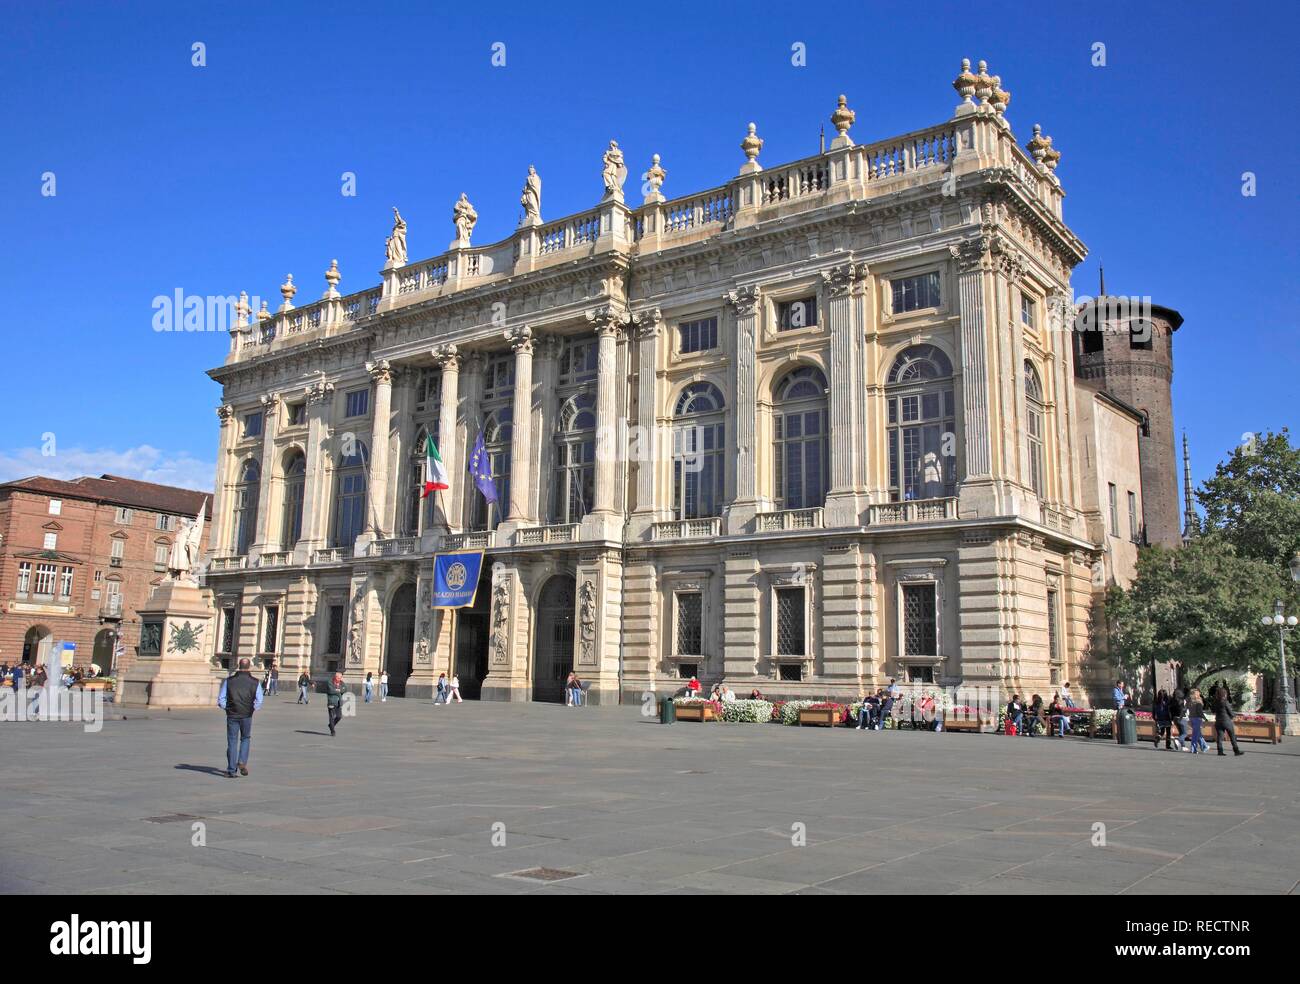 La facciata barocca del Palazzo Madama in piazza Castello, Torino, Torino, Piemonte, Italia, Europa Foto Stock